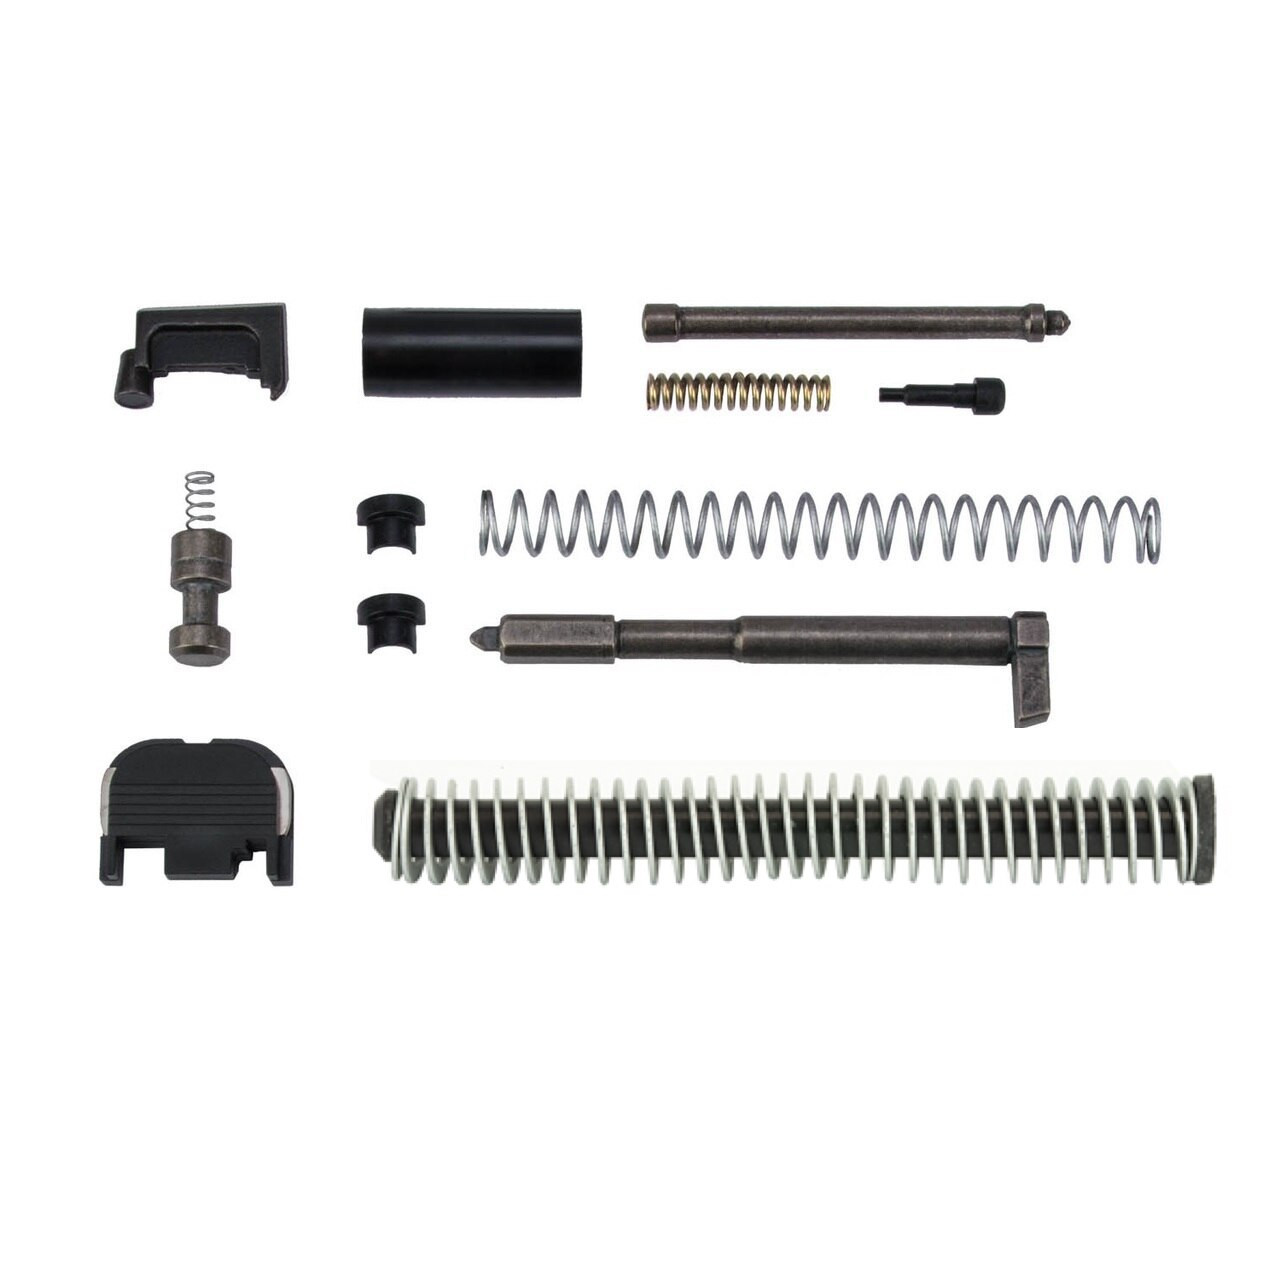 Glock Oem Slide Parts Kit For G17 Gen 3 9mm